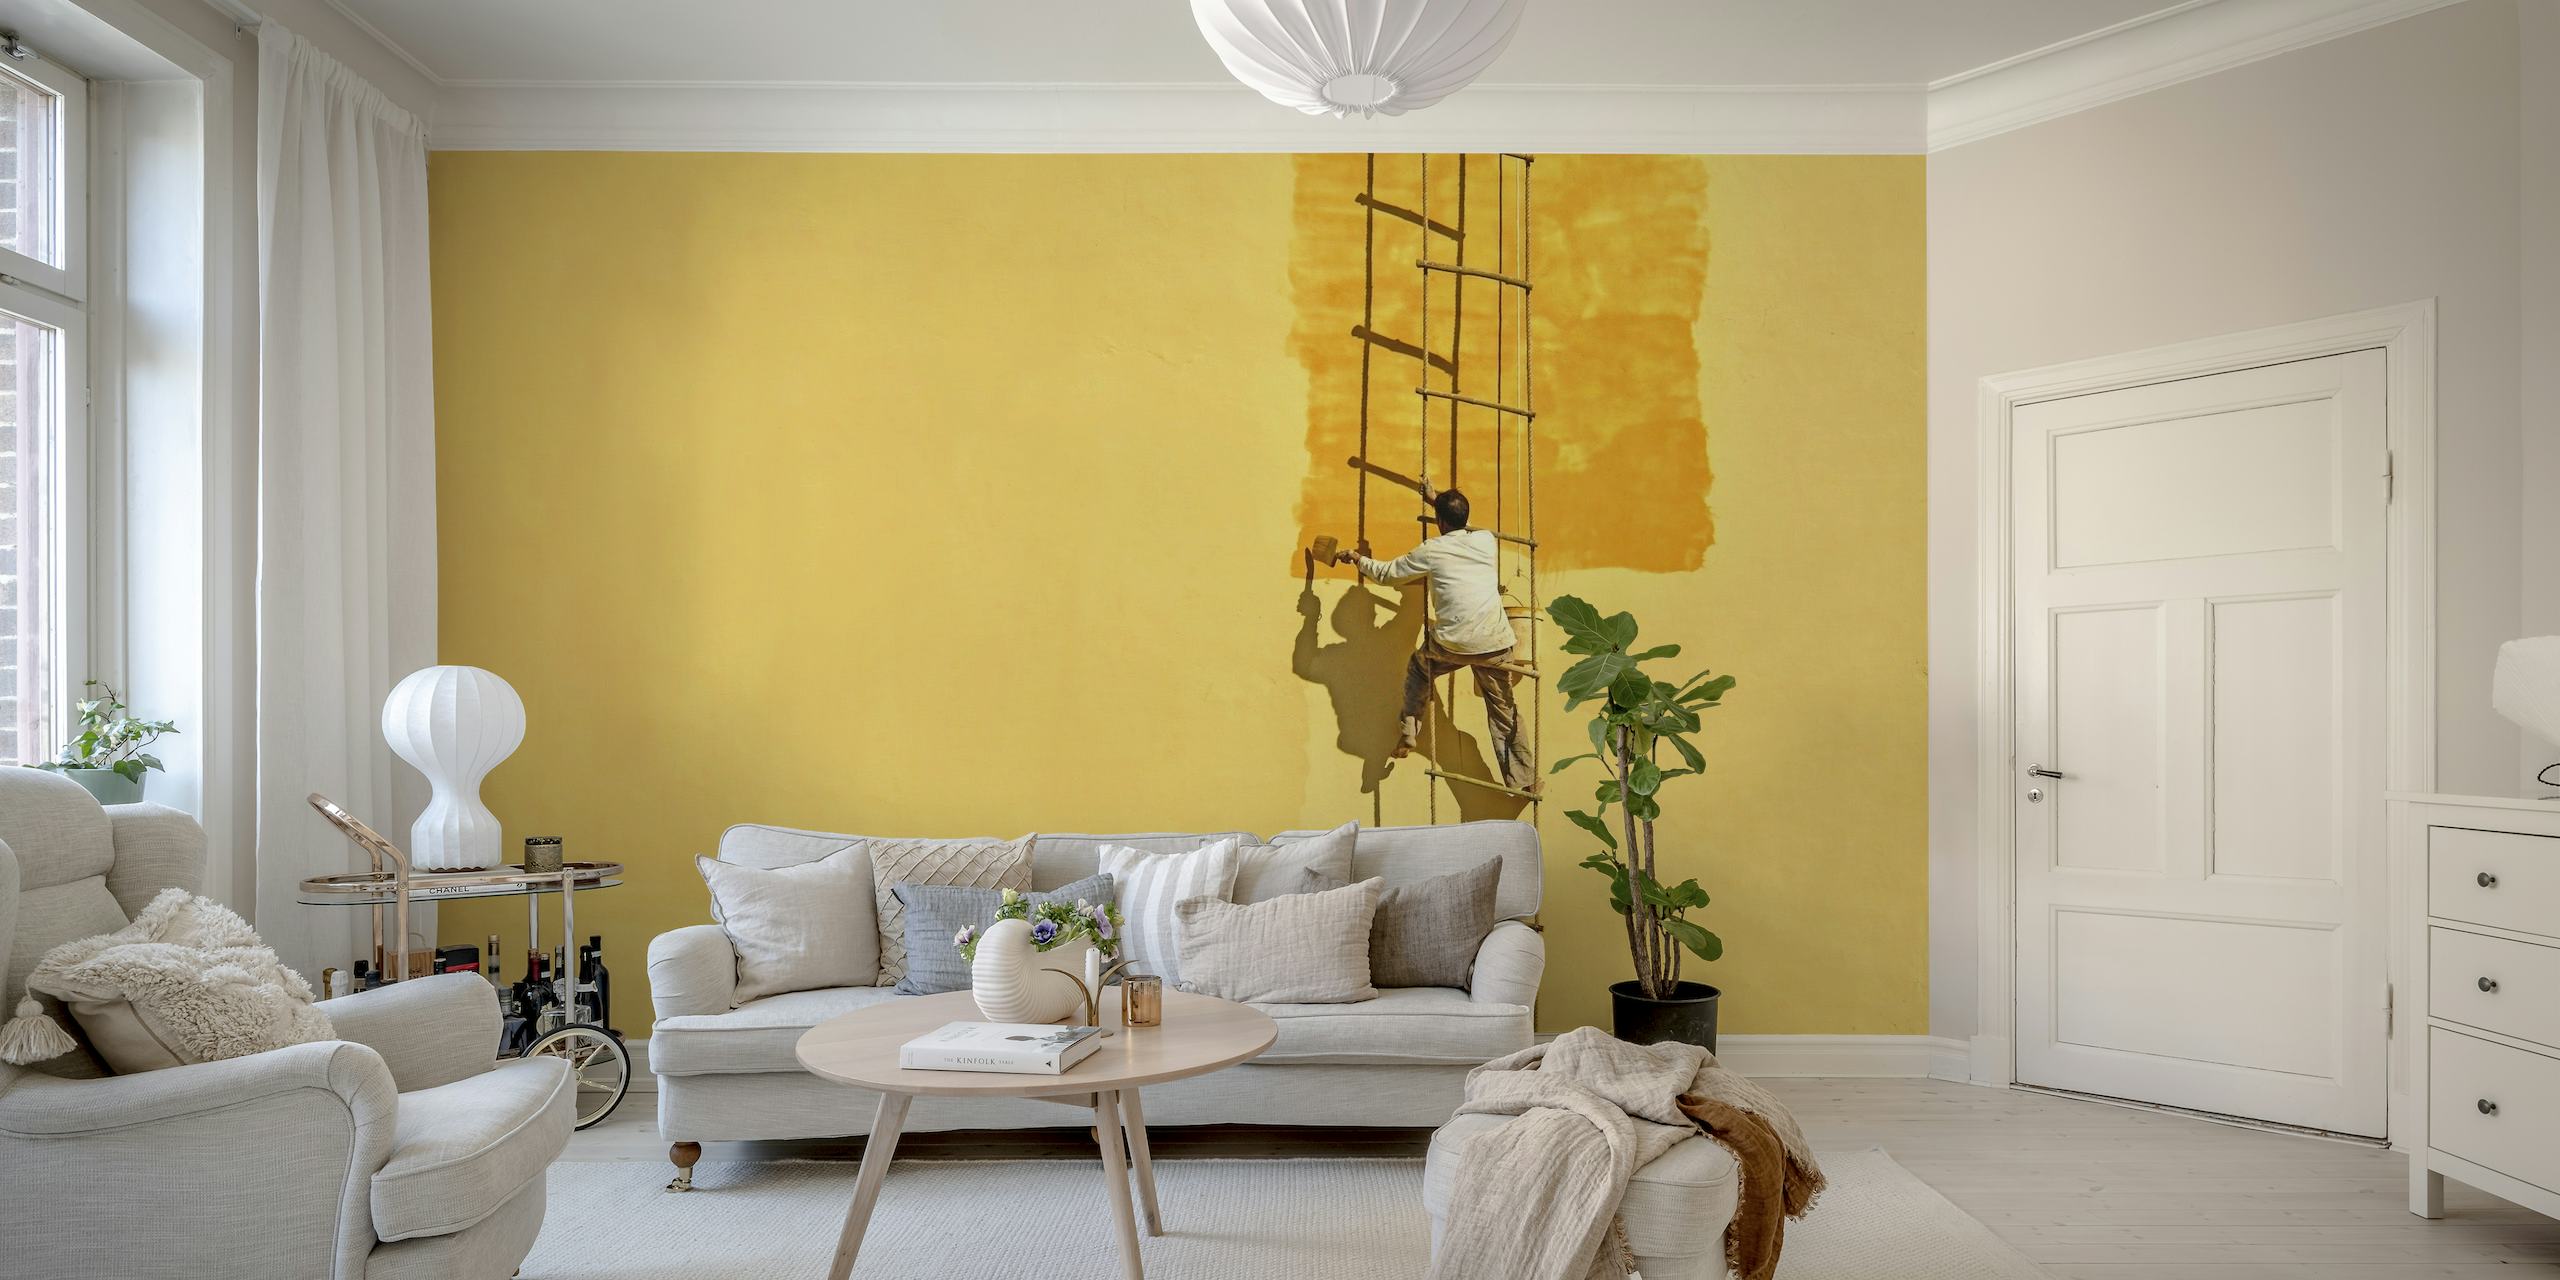 Silhouetted maalari tikkailla keltaista seinämaalausta vasten